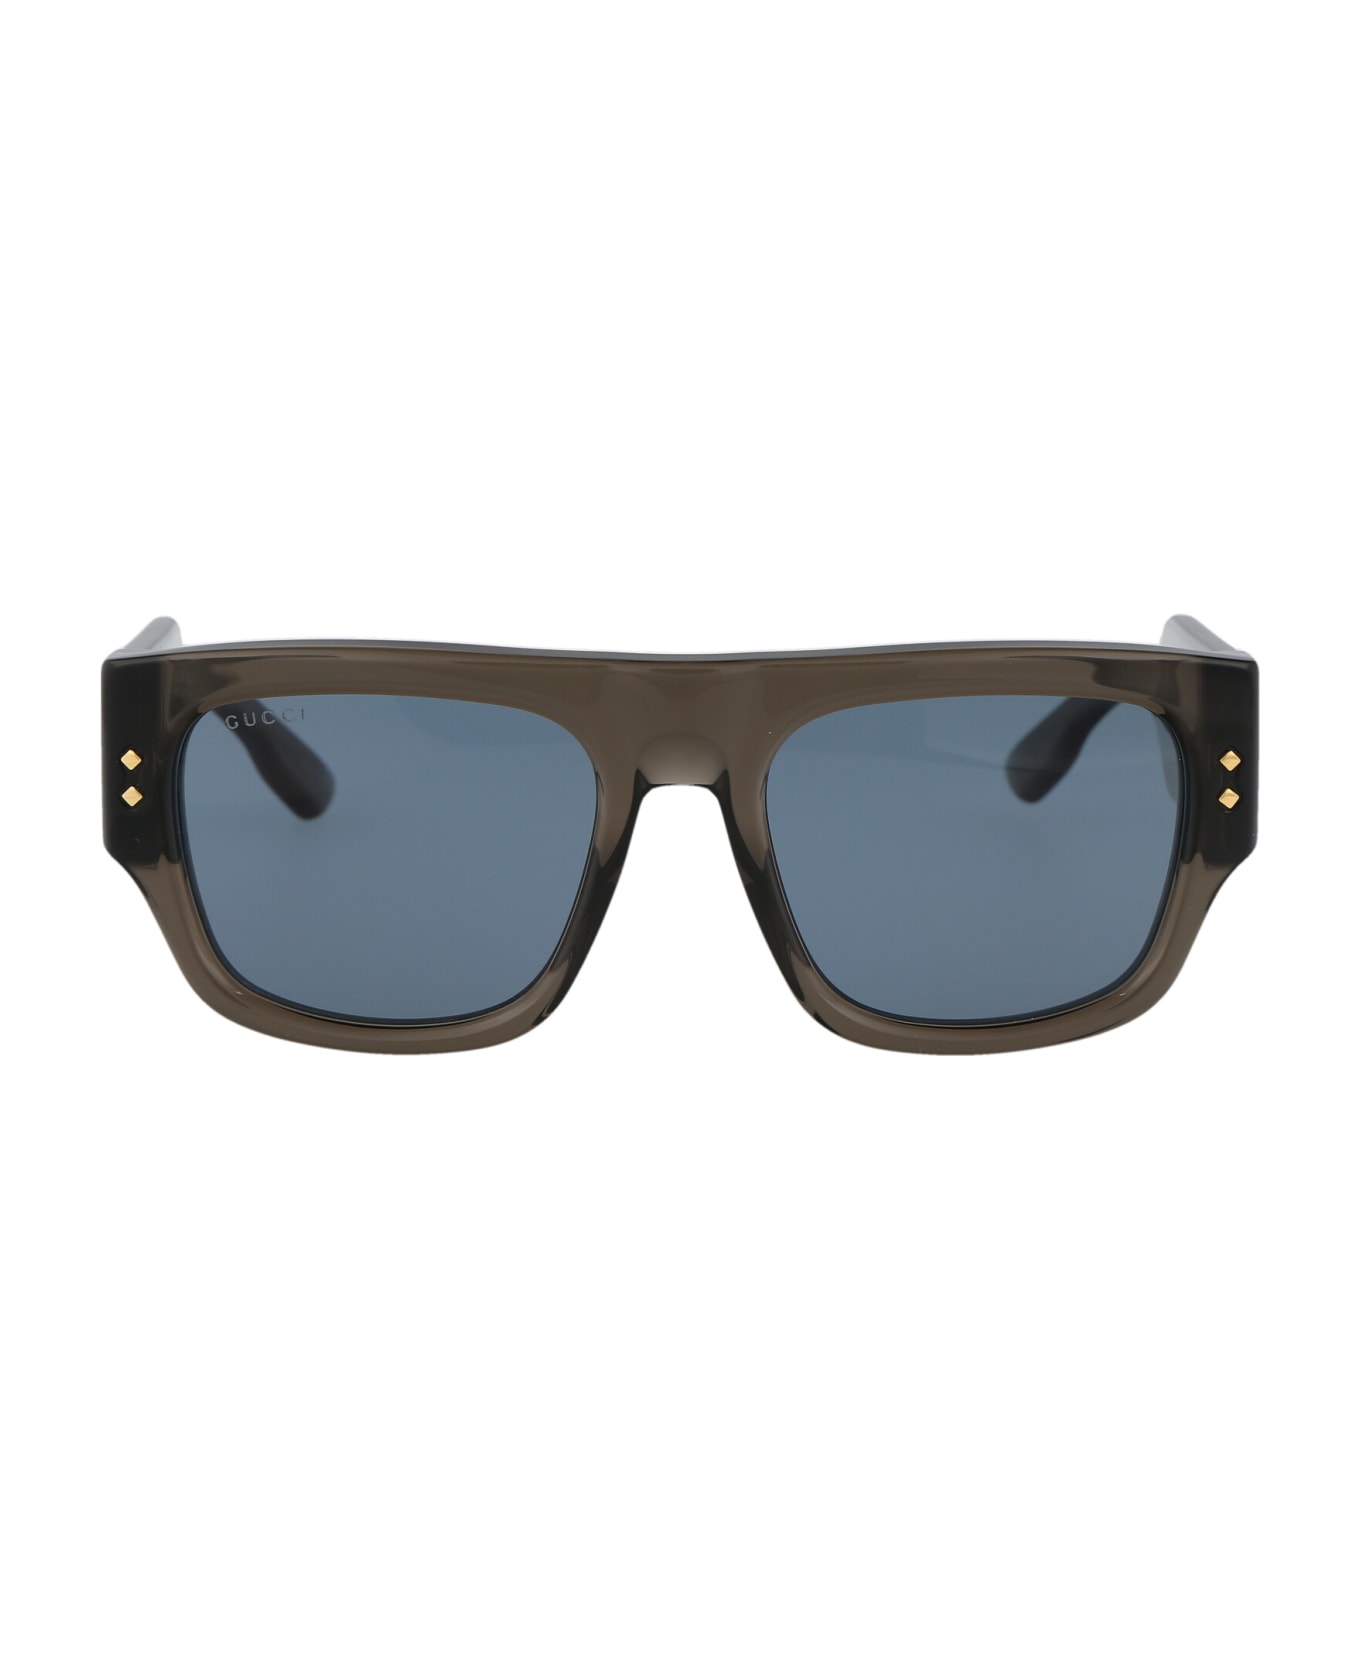 Gucci Eyewear Gg1262s Sunglasses - 003 GREY GREY BLUE